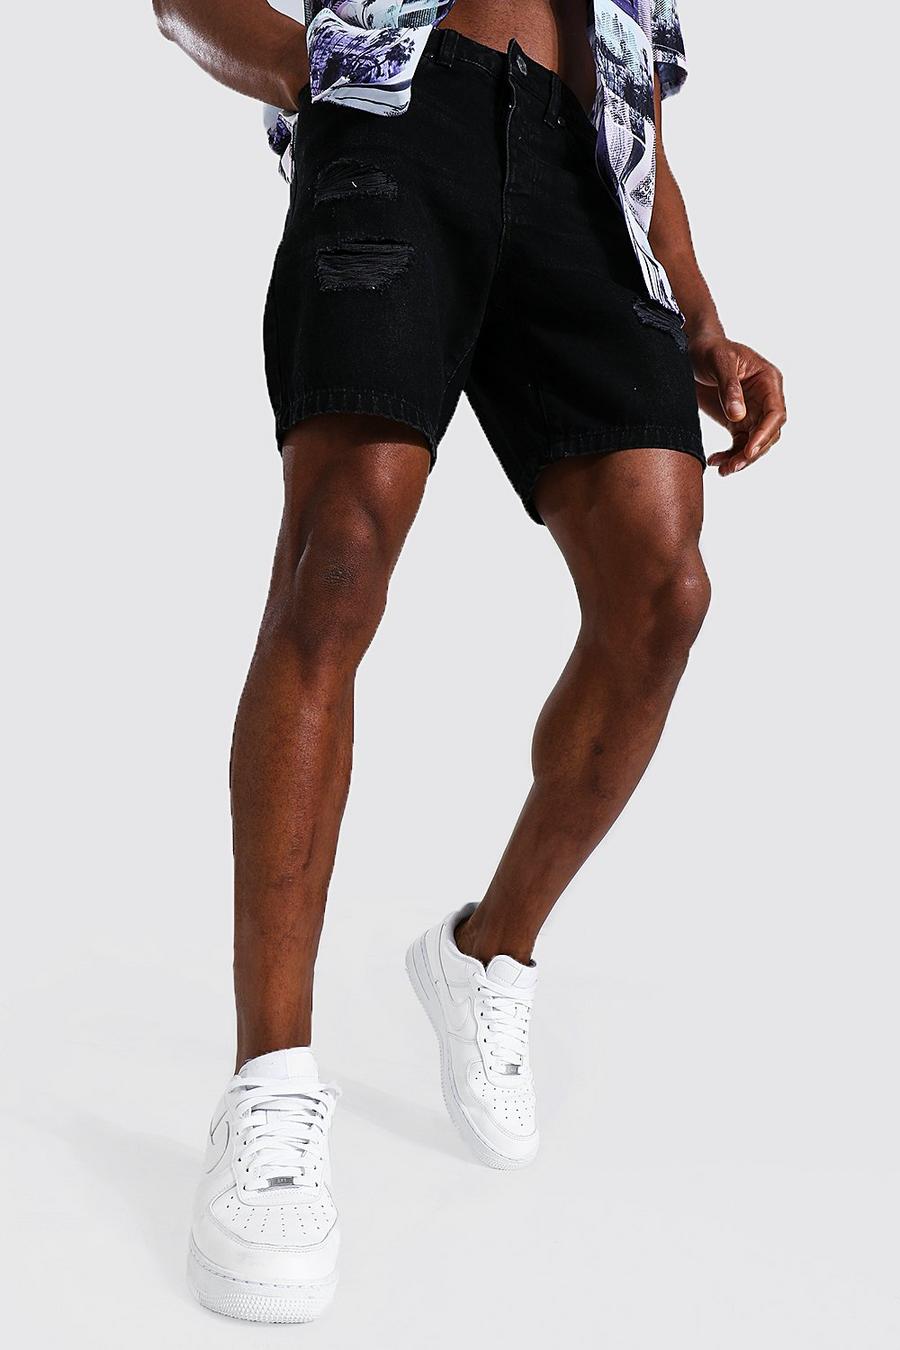 Pantalones cortos estilo vaquero Slim Fit rígidos con varias rasgaduras, Negro desteñido image number 1